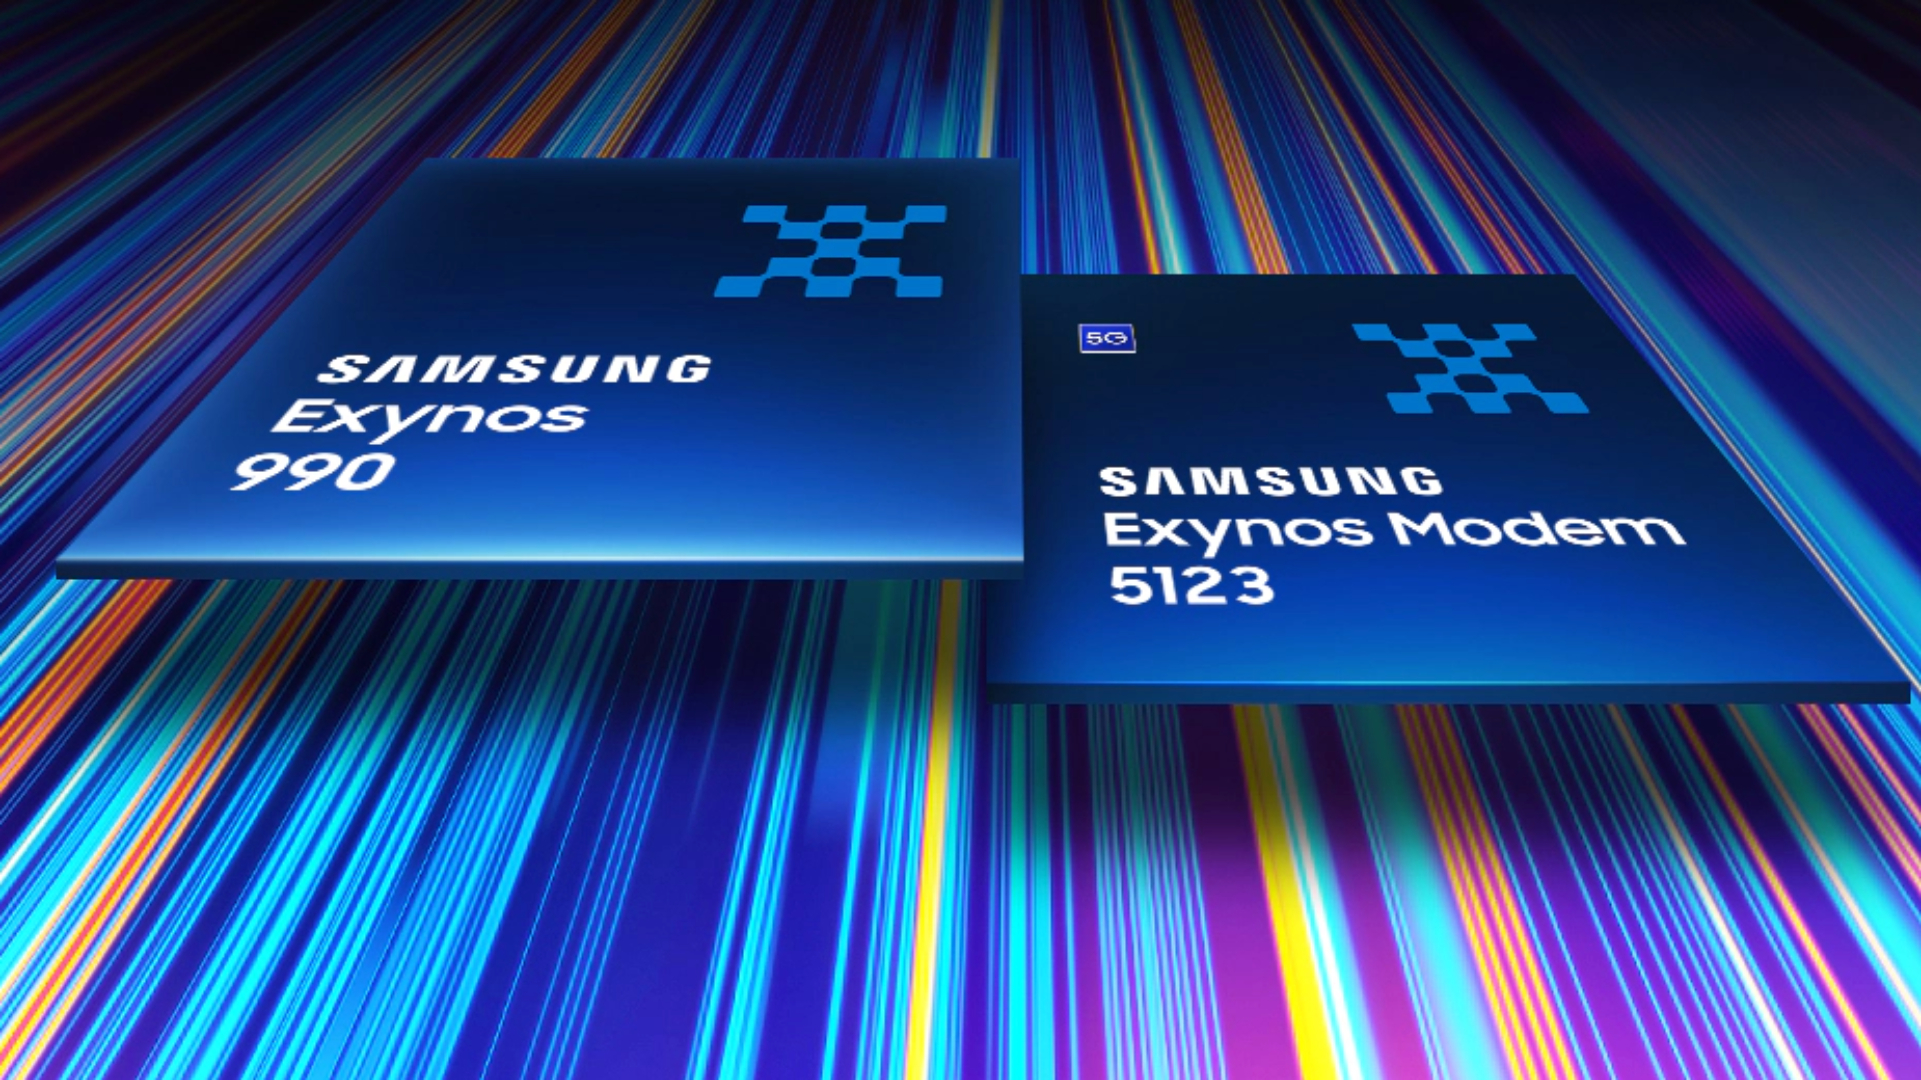 Samsung Exynos 990 Exynos 5123 modem